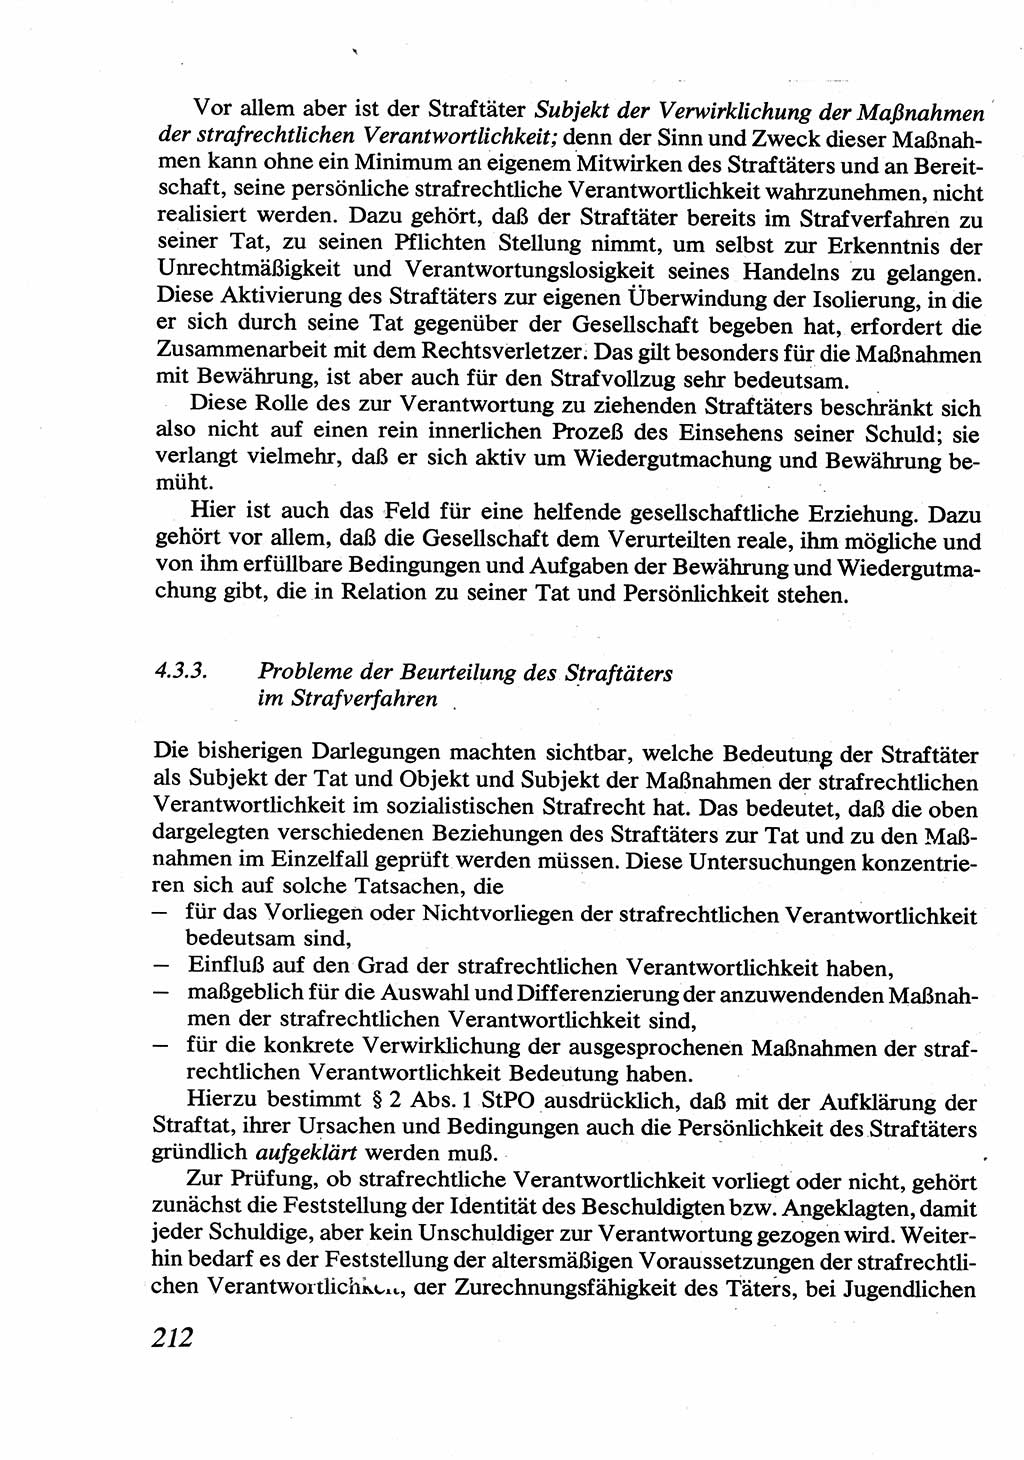 Strafrecht [Deutsche Demokratische Republik (DDR)], Allgemeiner Teil, Lehrbuch 1976, Seite 212 (Strafr. DDR AT Lb. 1976, S. 212)